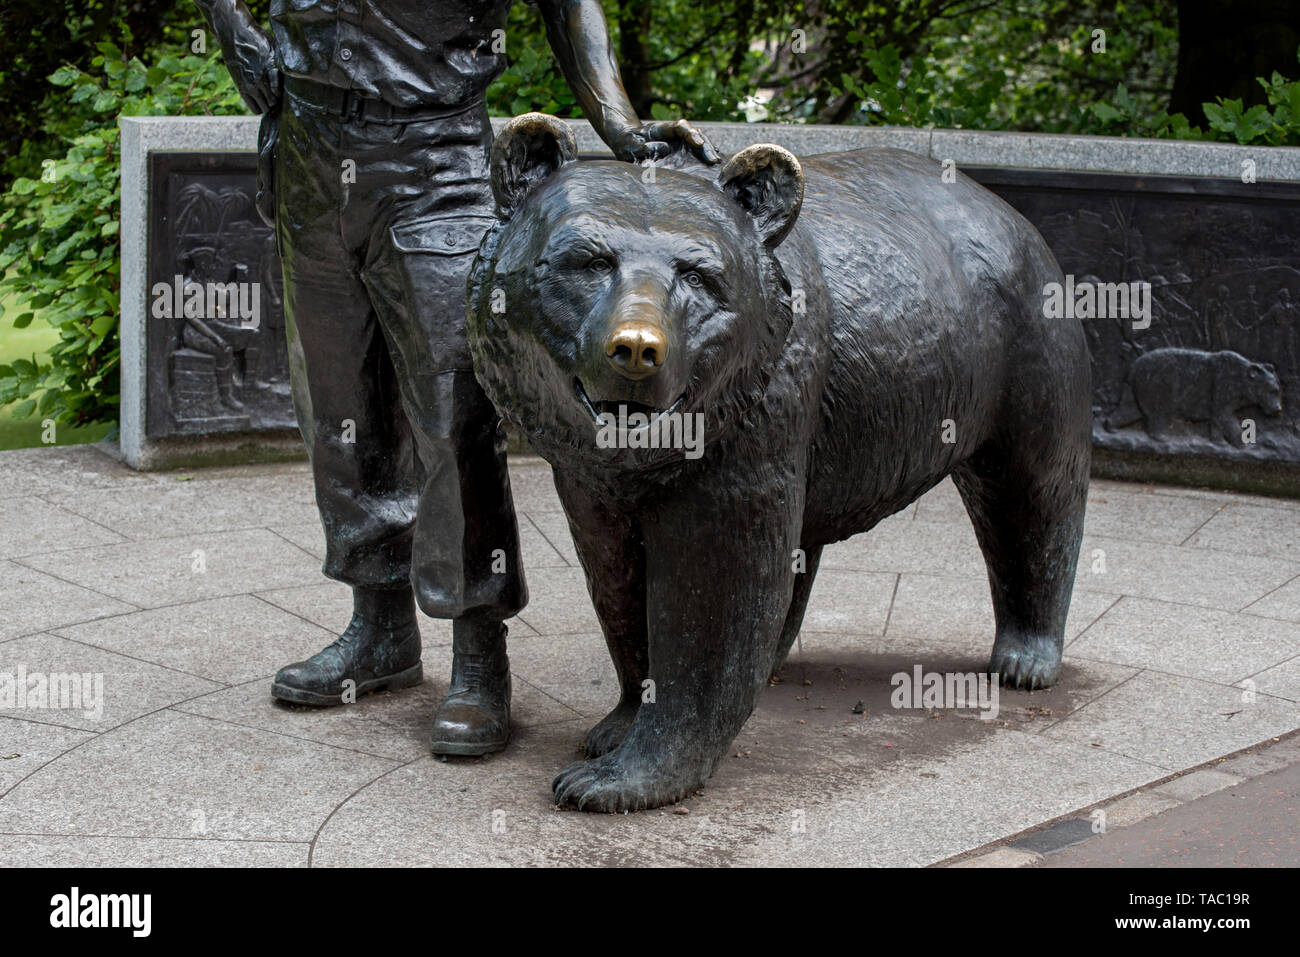 Wojtek l'ours soldat, une partie de la mémoire des anciens combattants polonais de la seconde guerre mondiale, dans les jardins de Princes Street, Édimbourg, Écosse, Royaume-Uni. Banque D'Images